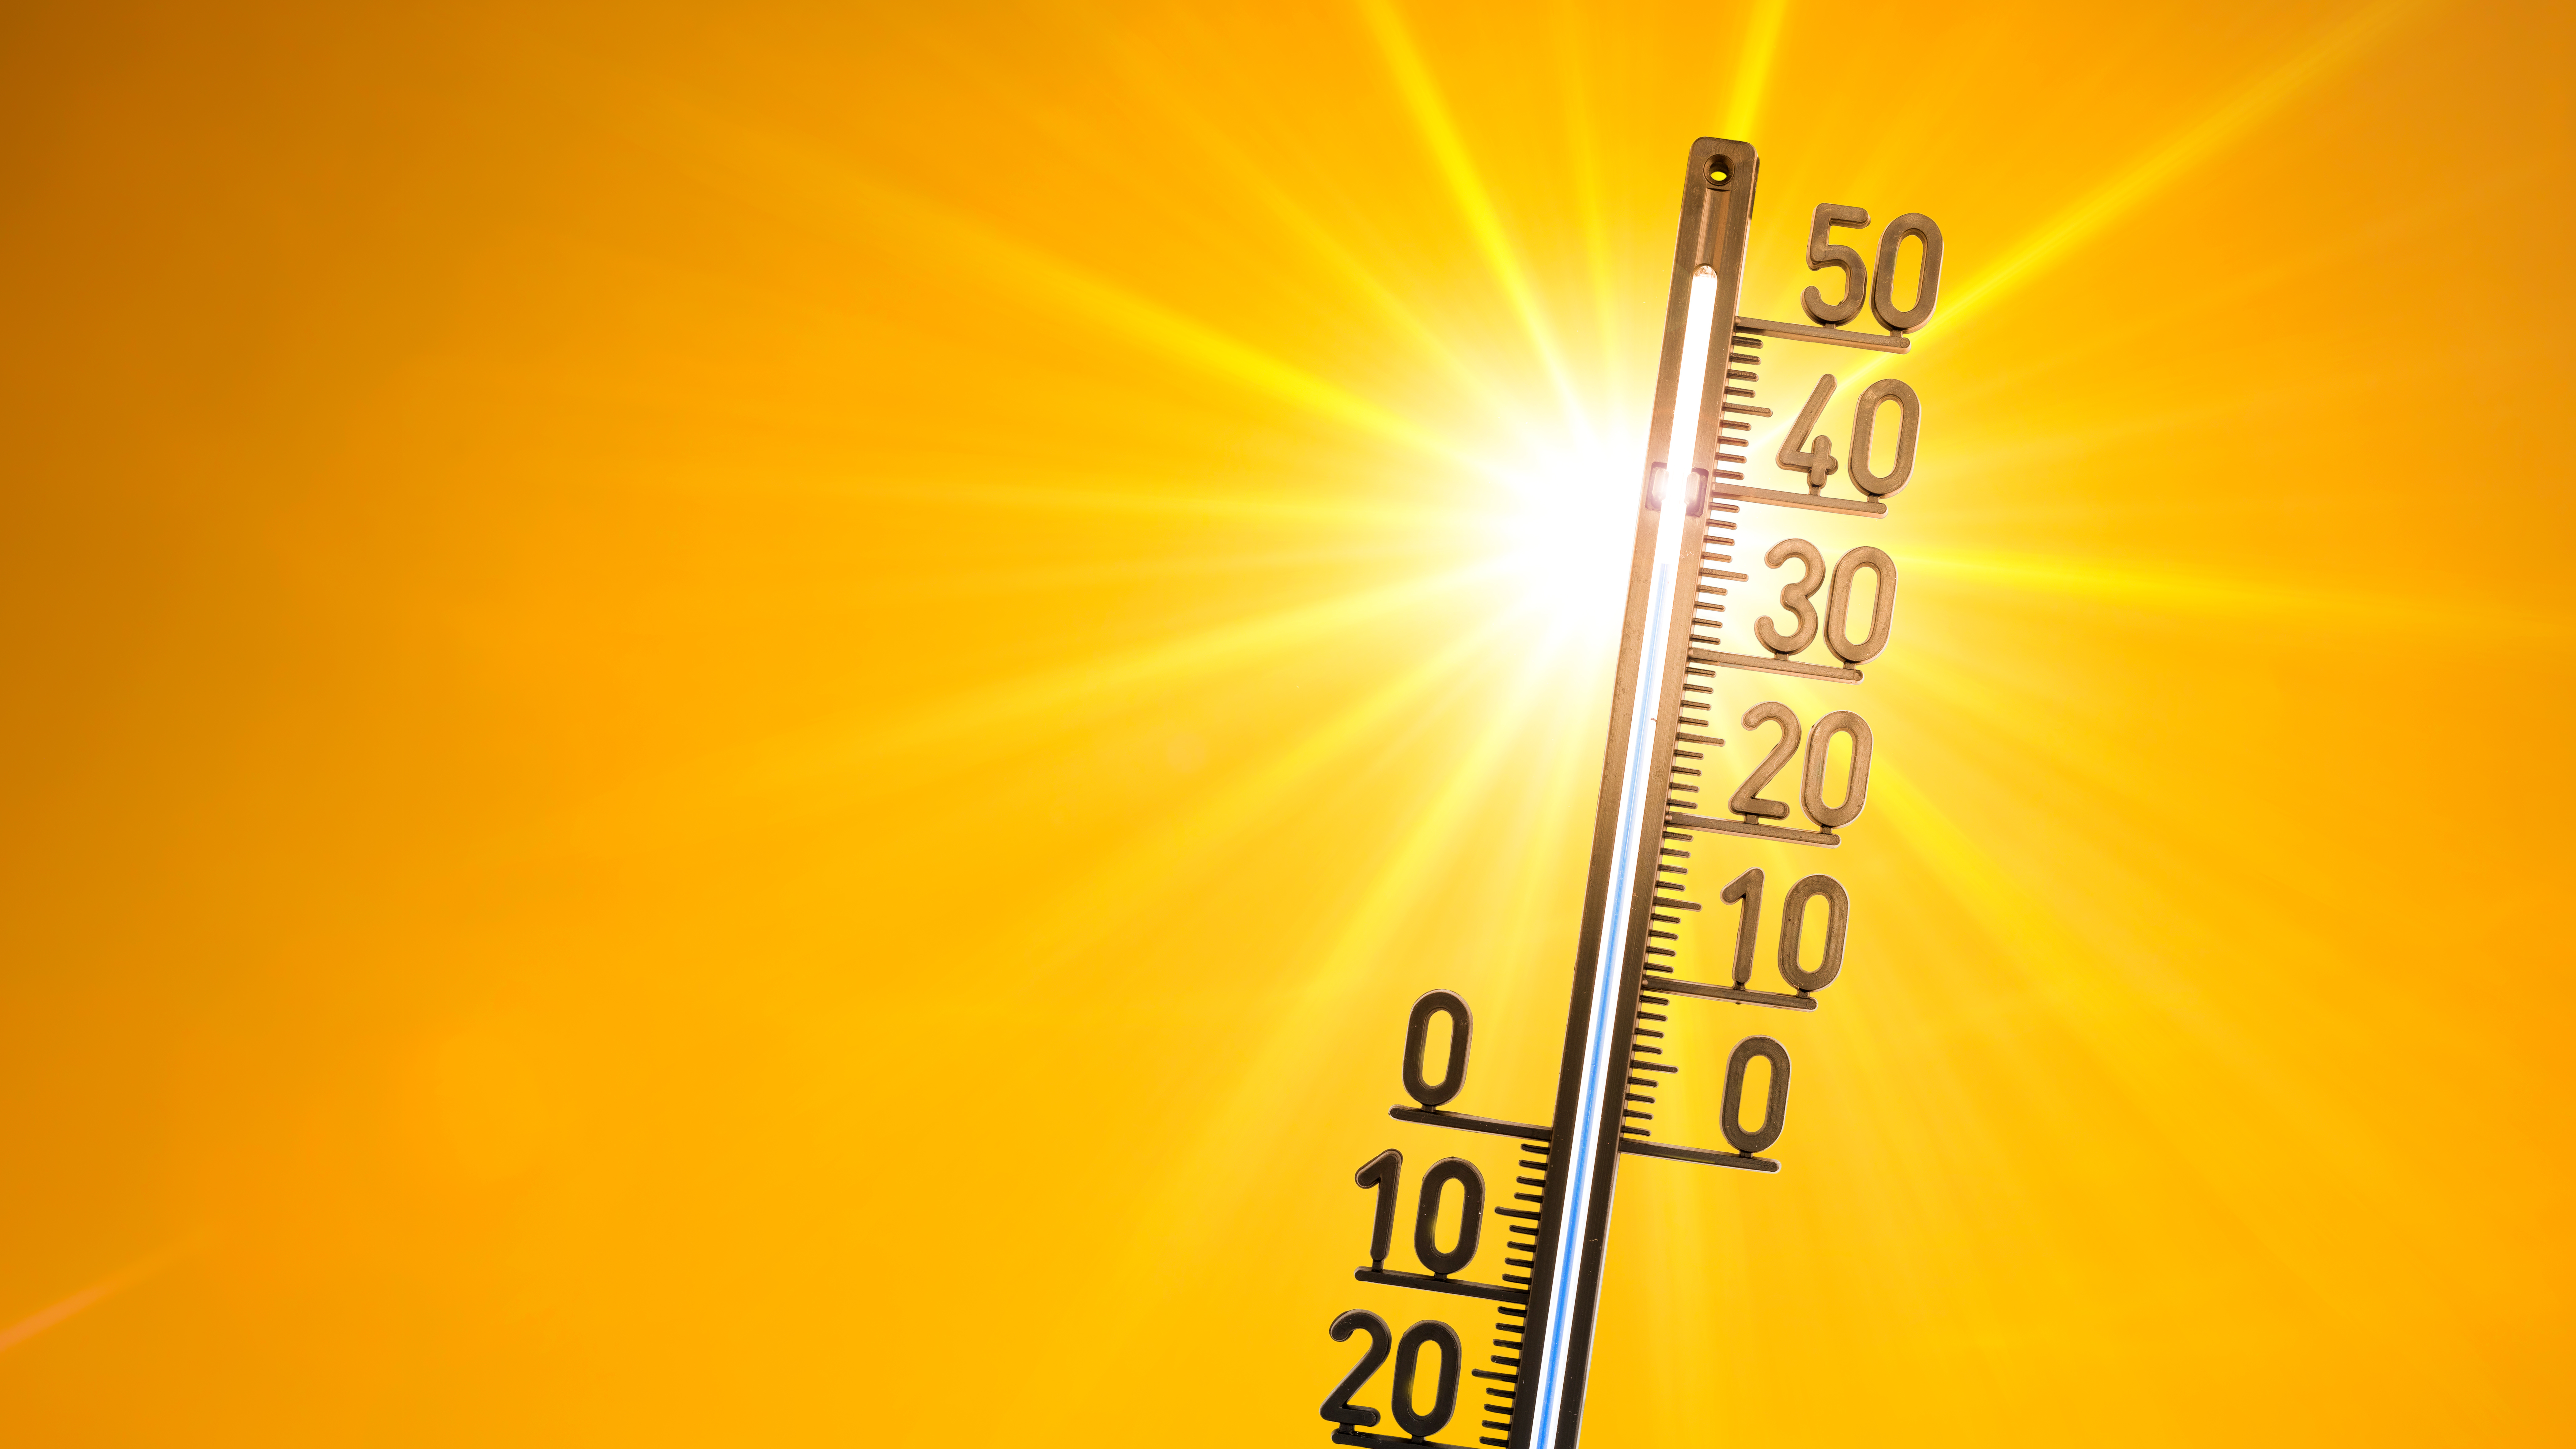 Temperaturessung, Thermometer vor Sonne